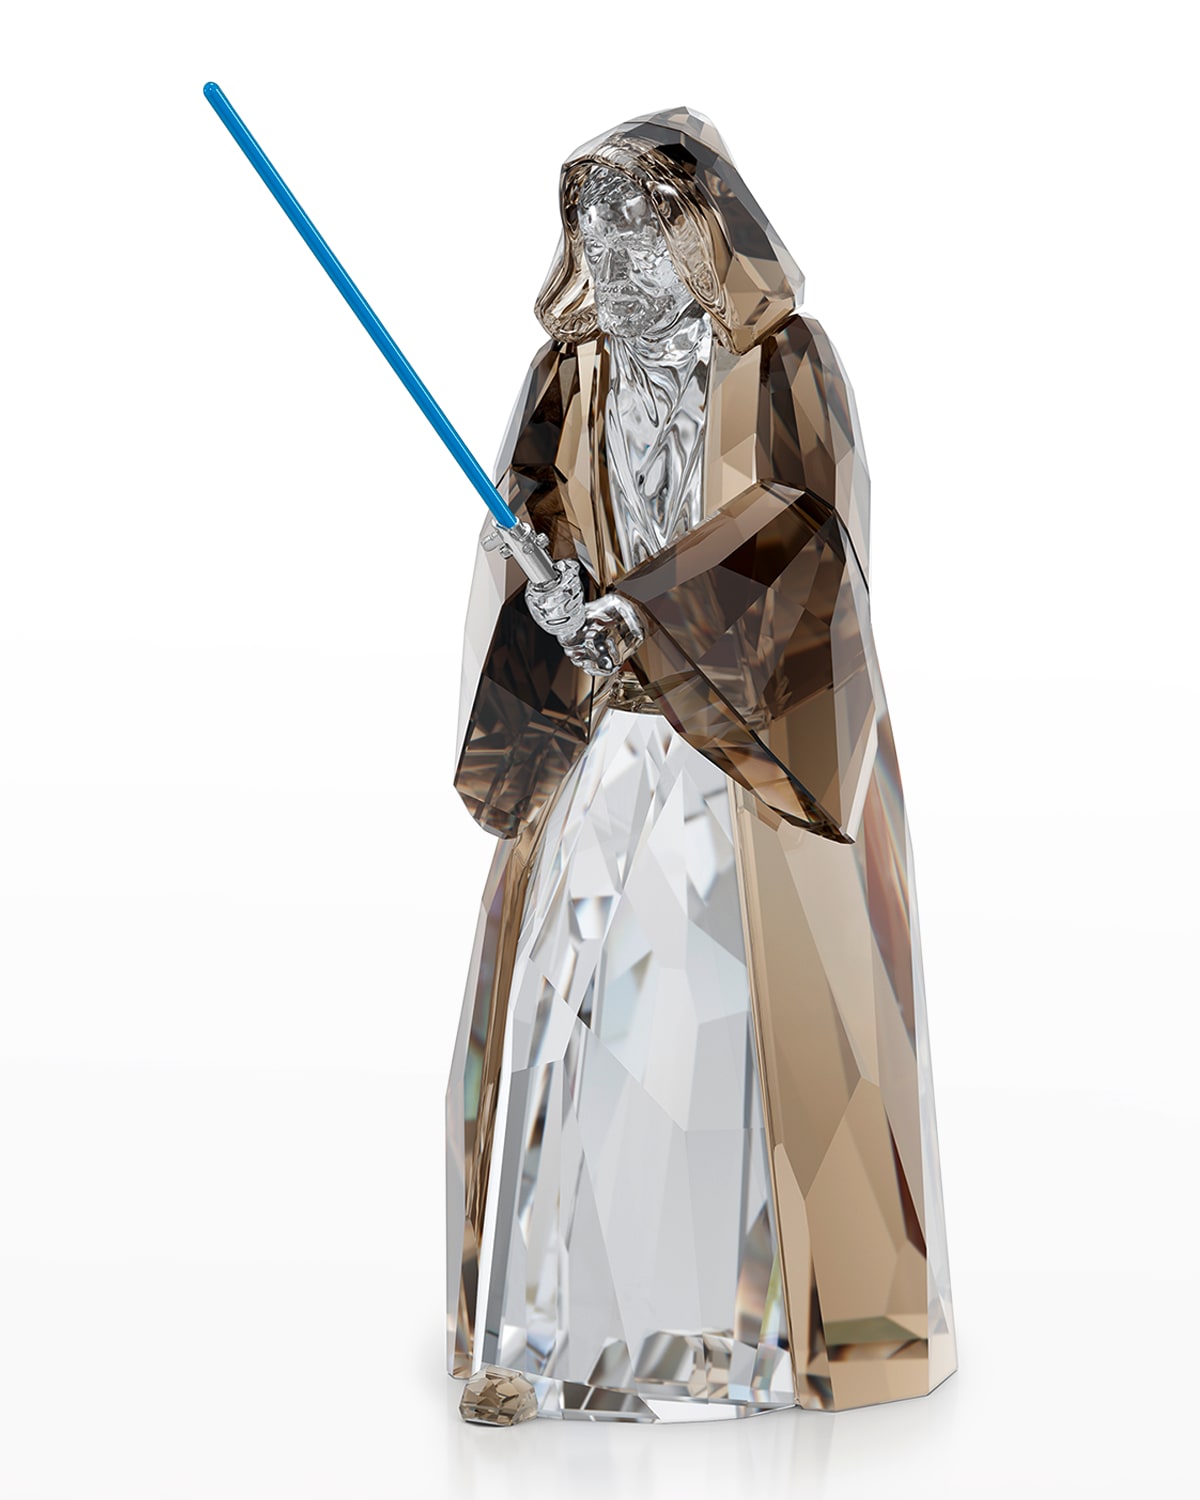 Swarovski Star Wars Obi-wan Kenobi Ornament In Multicolored